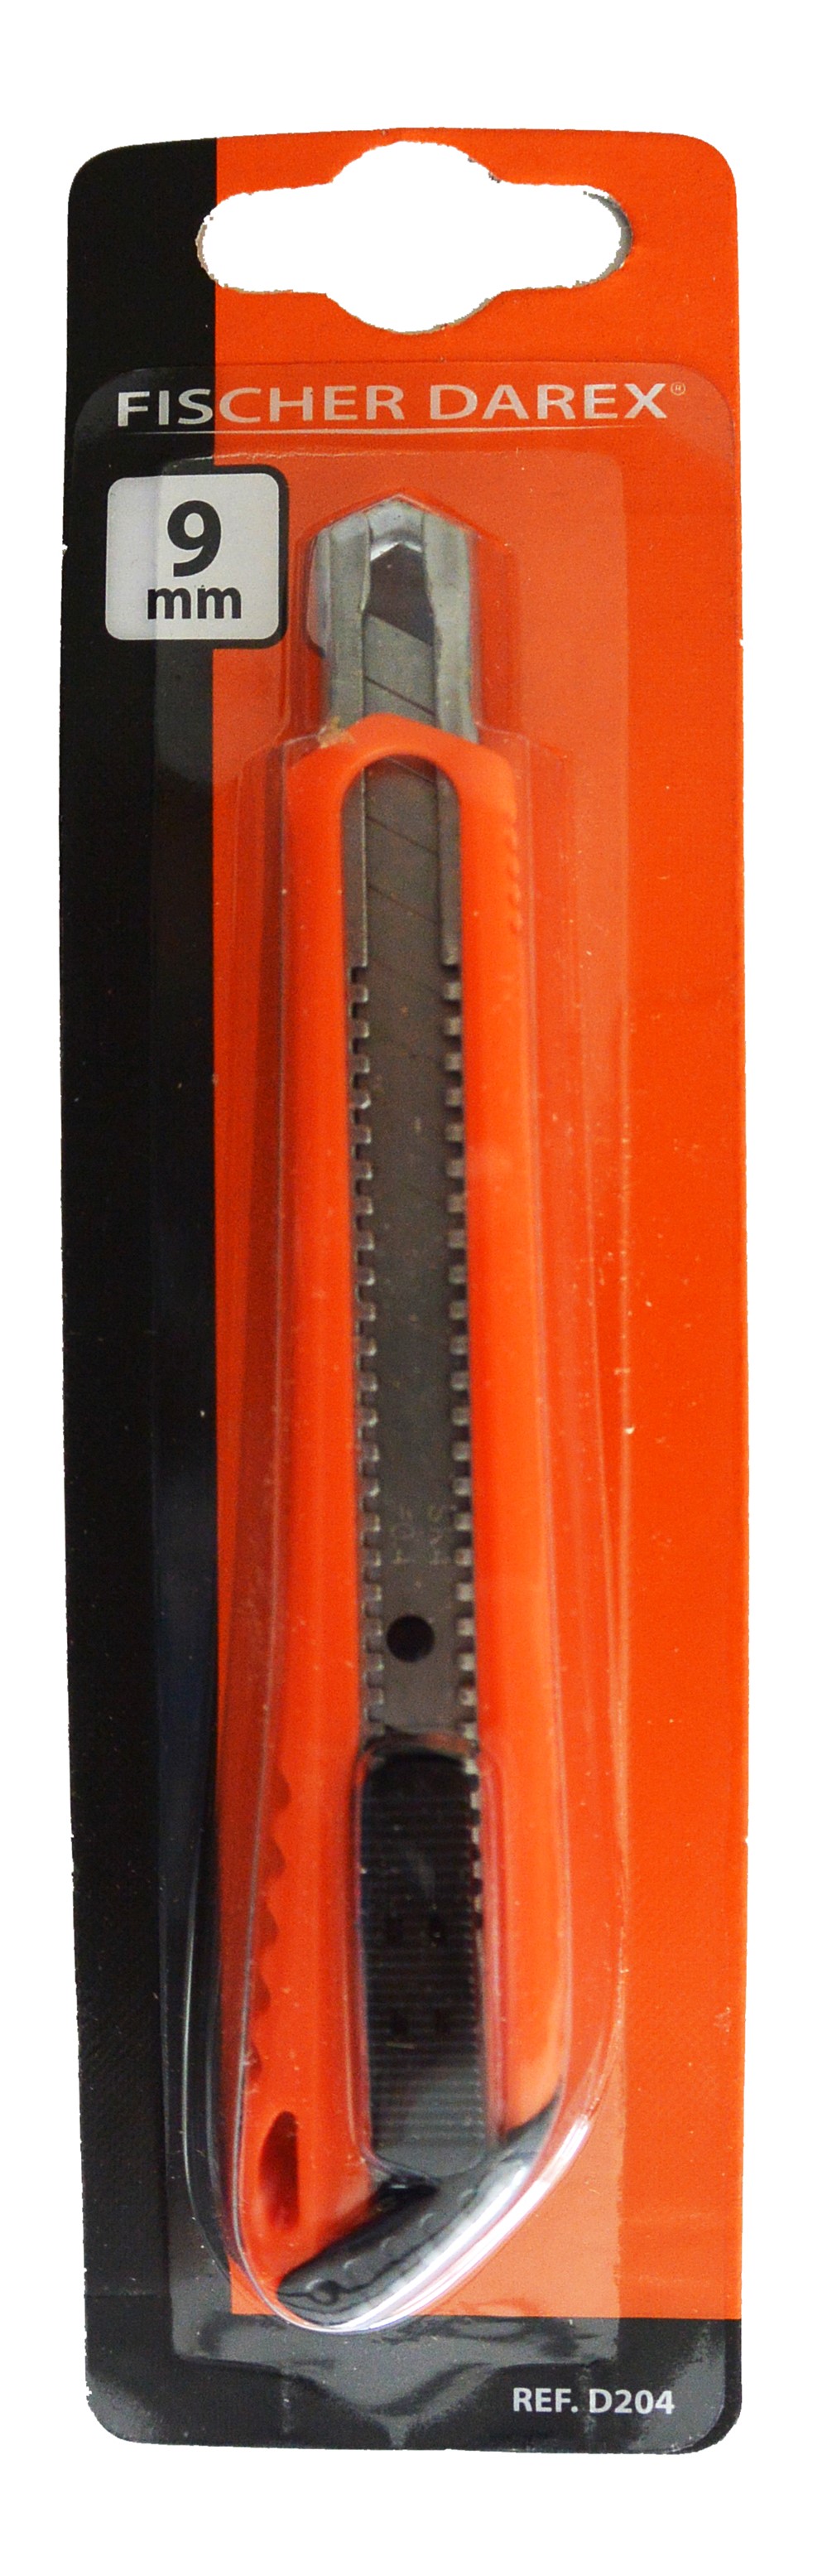 Cutter à lame cassable 9 mm - FISCHER DAREX